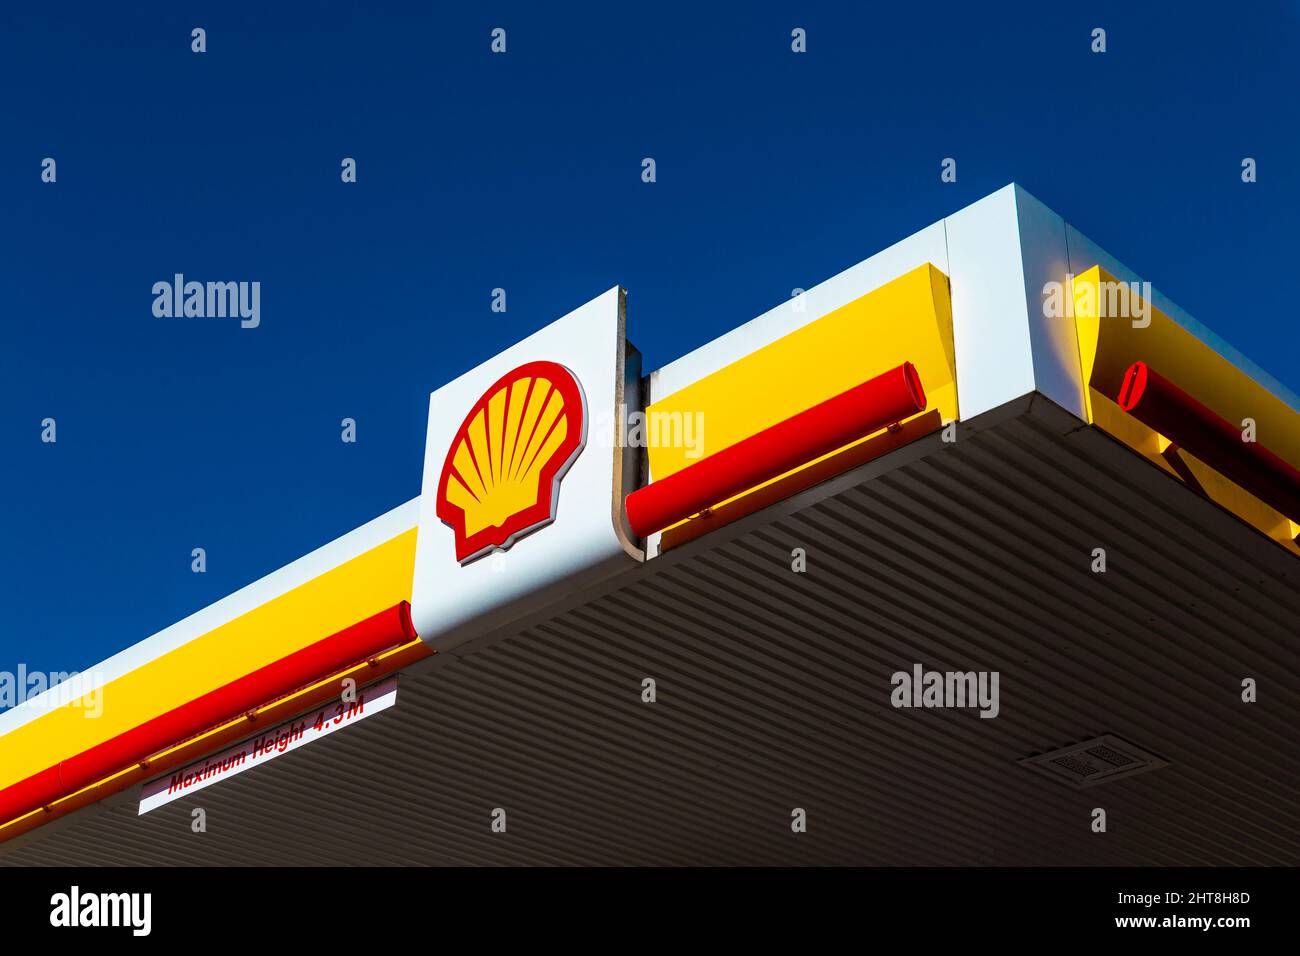 Gros plan sur le logo de la société Shell Oil dans l'une de ses stations-service Banque D'Images